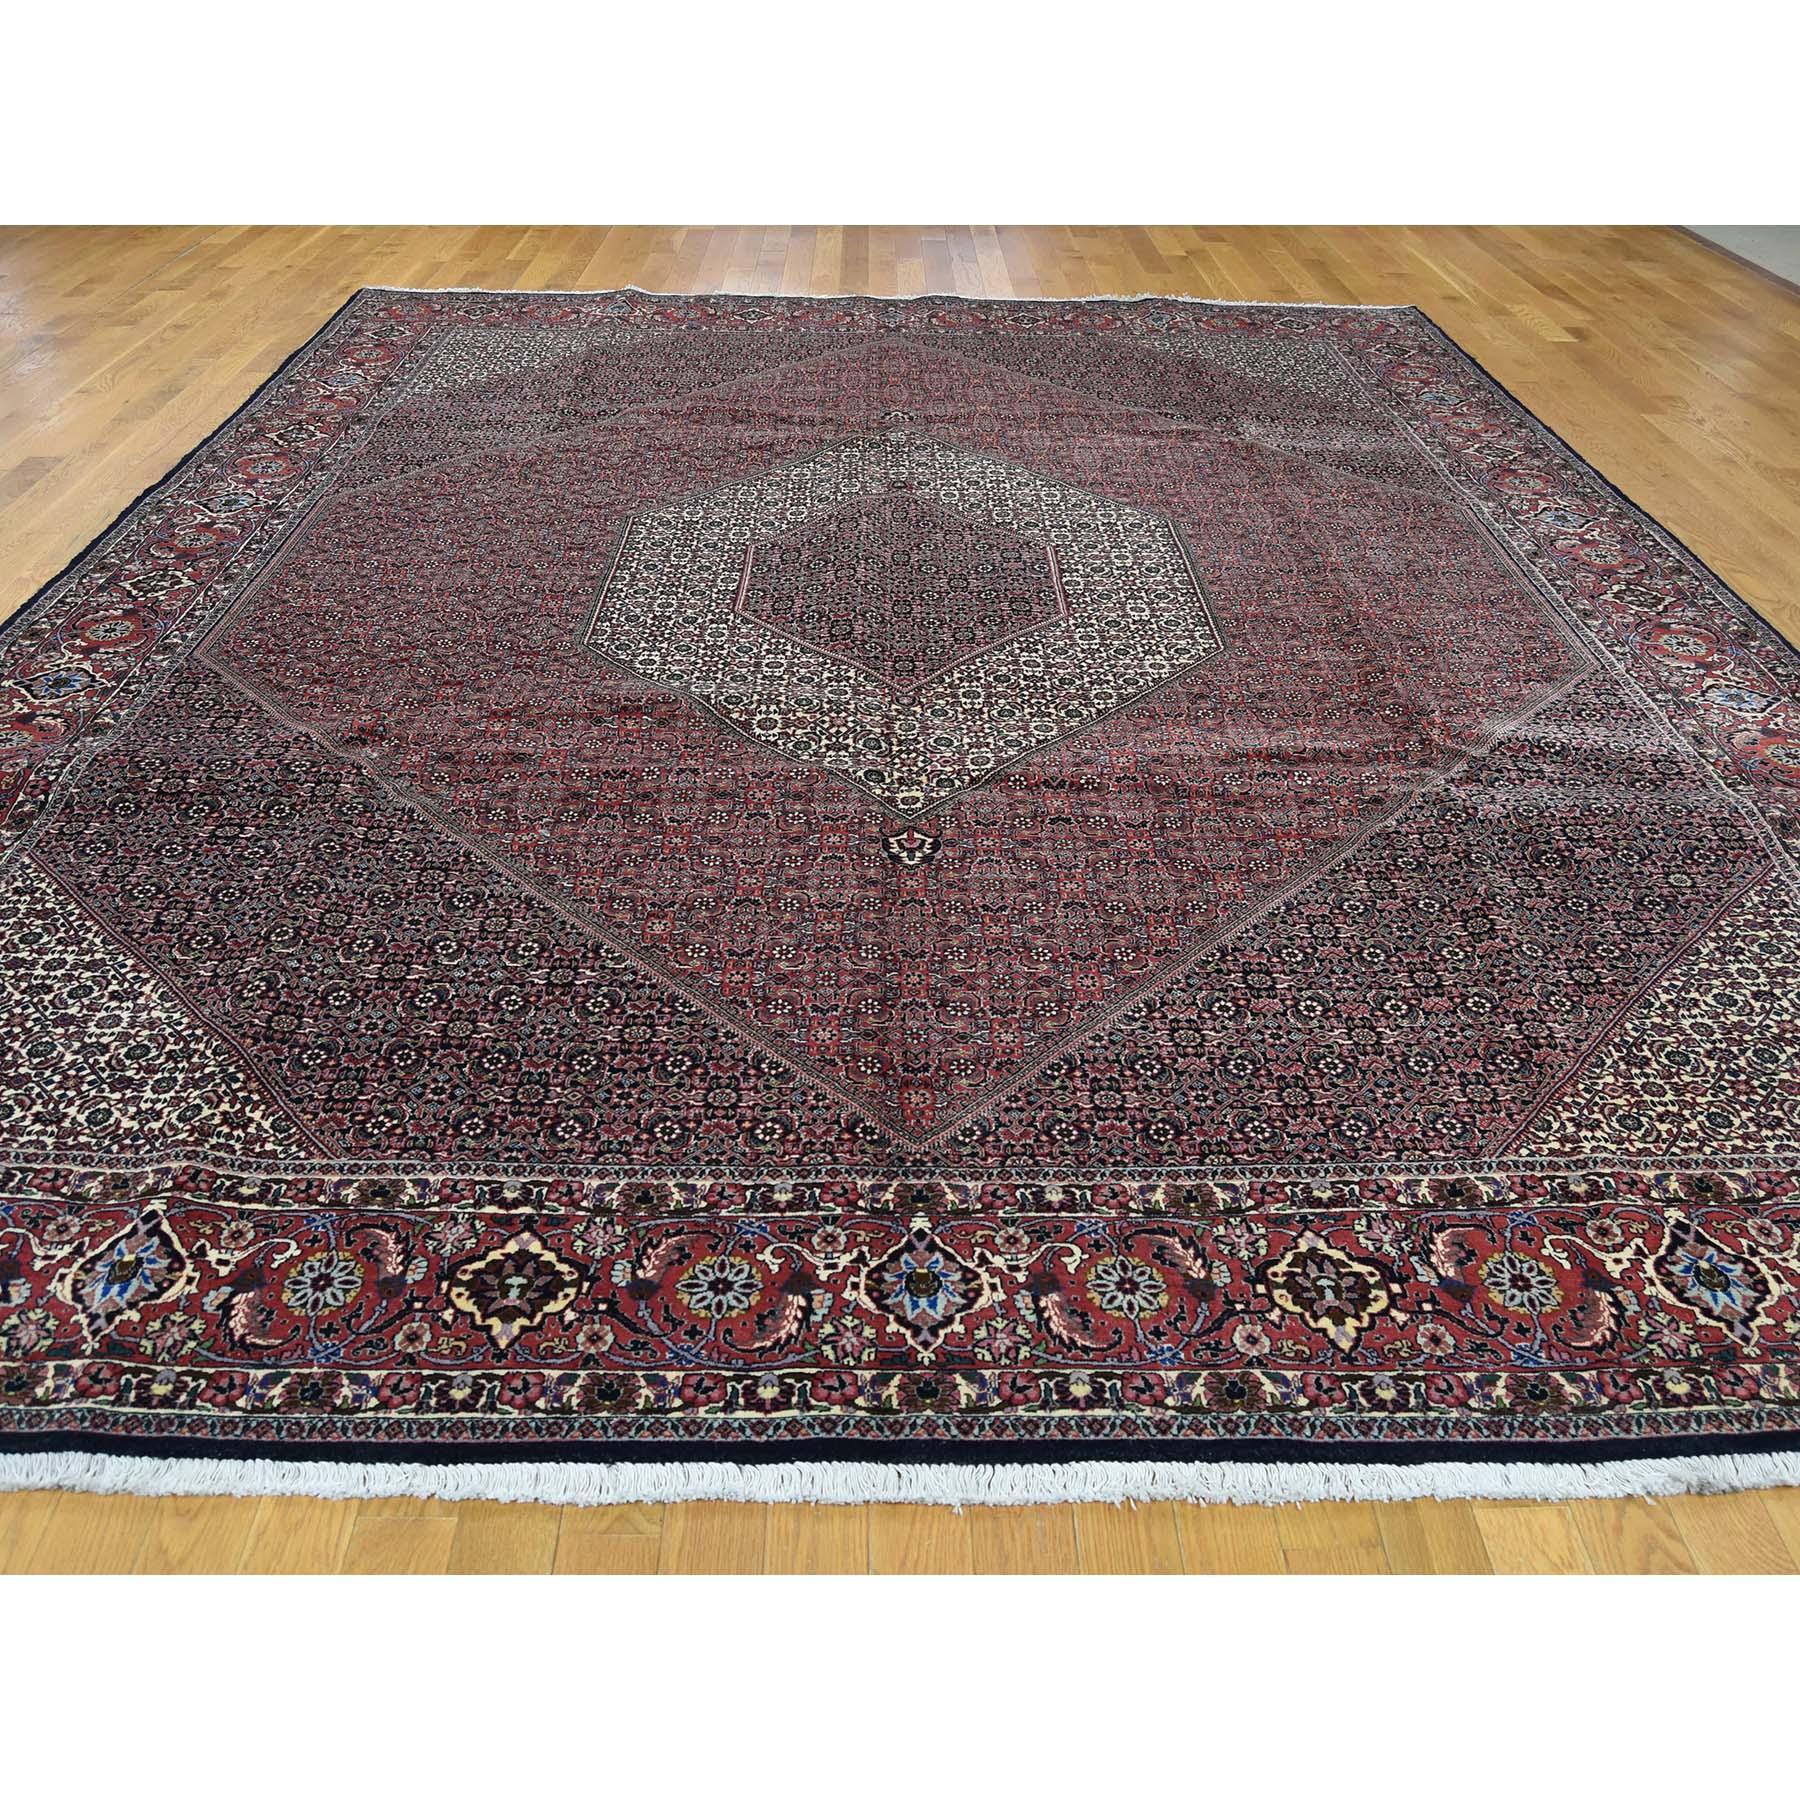 Medieval Persian Bijar 300 Kpsi 100 Percent Wool Hand Knotted Oriental Rug